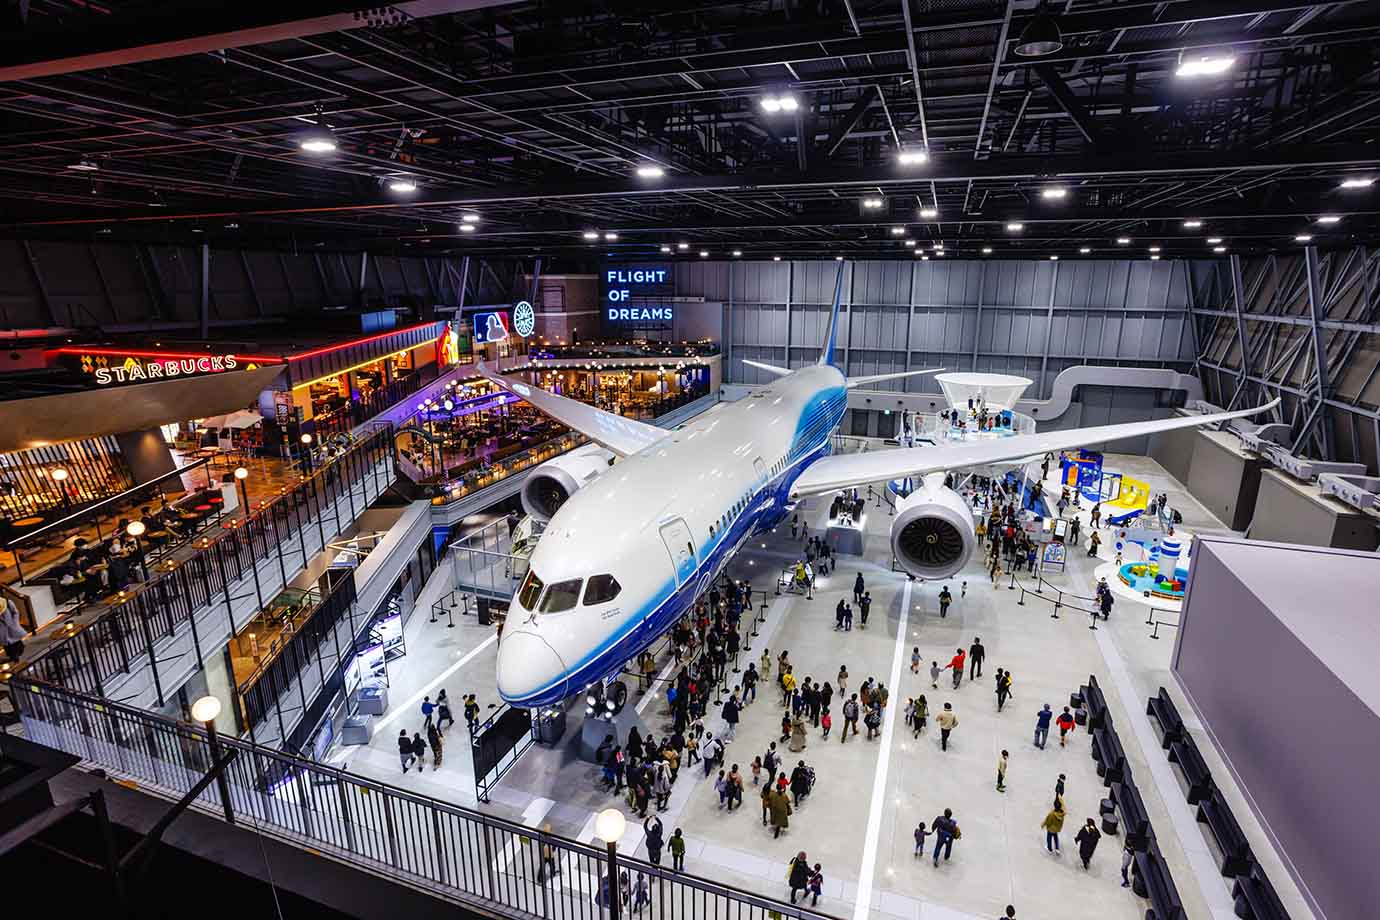 中部国際空港 セントレア内にある、日本最大サイズの「ボーイング787」の展示をメインとした複合商業施設